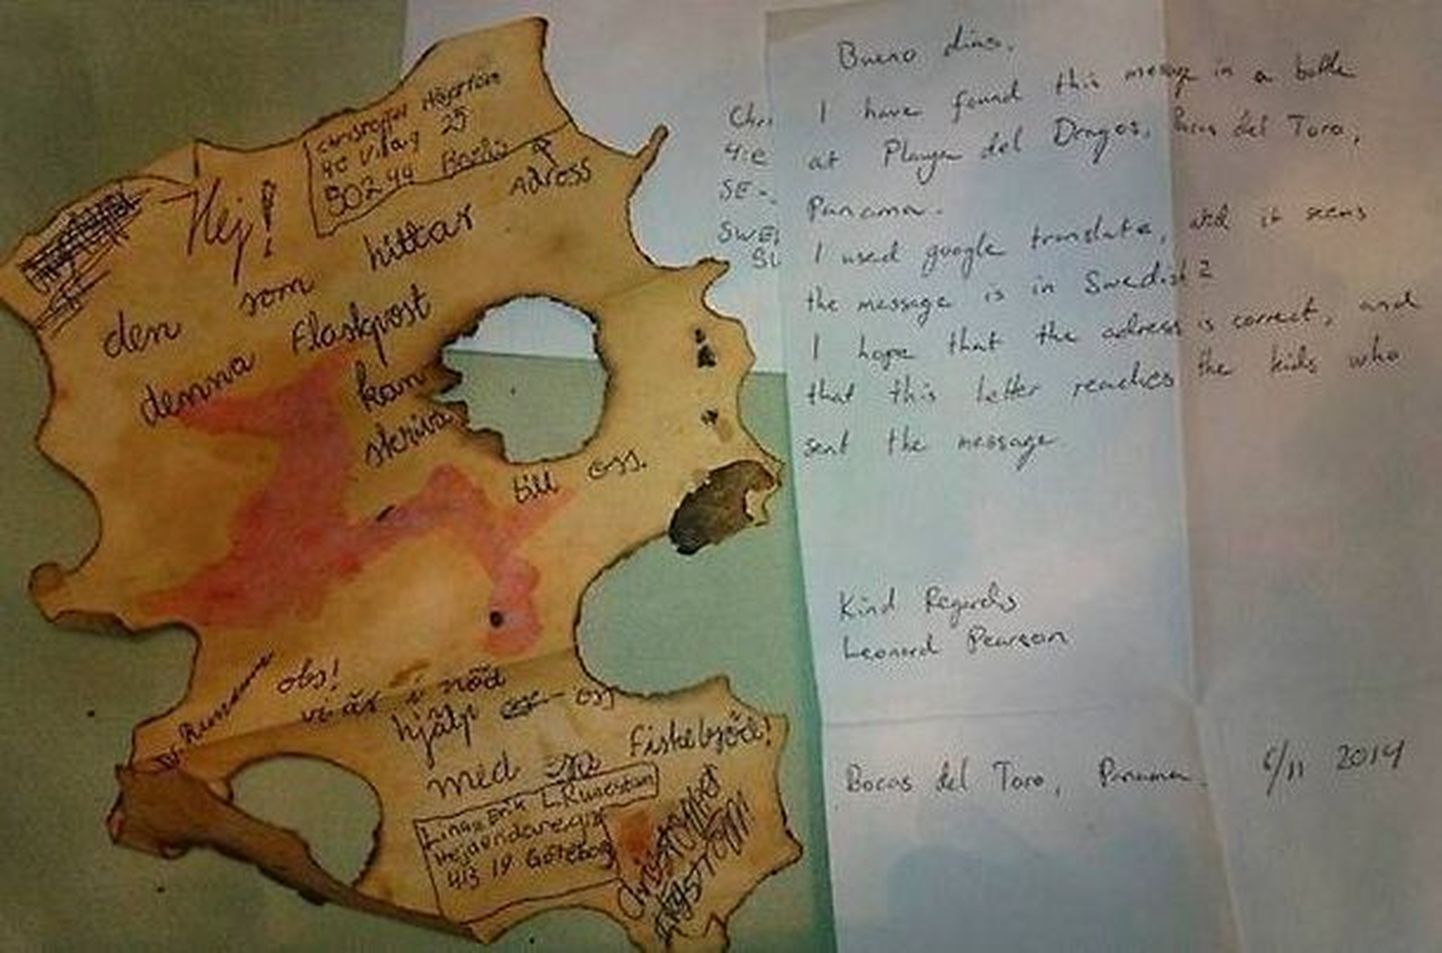 Rootsi laste joonistatud aardekaart ning Panamast saadetud kiri